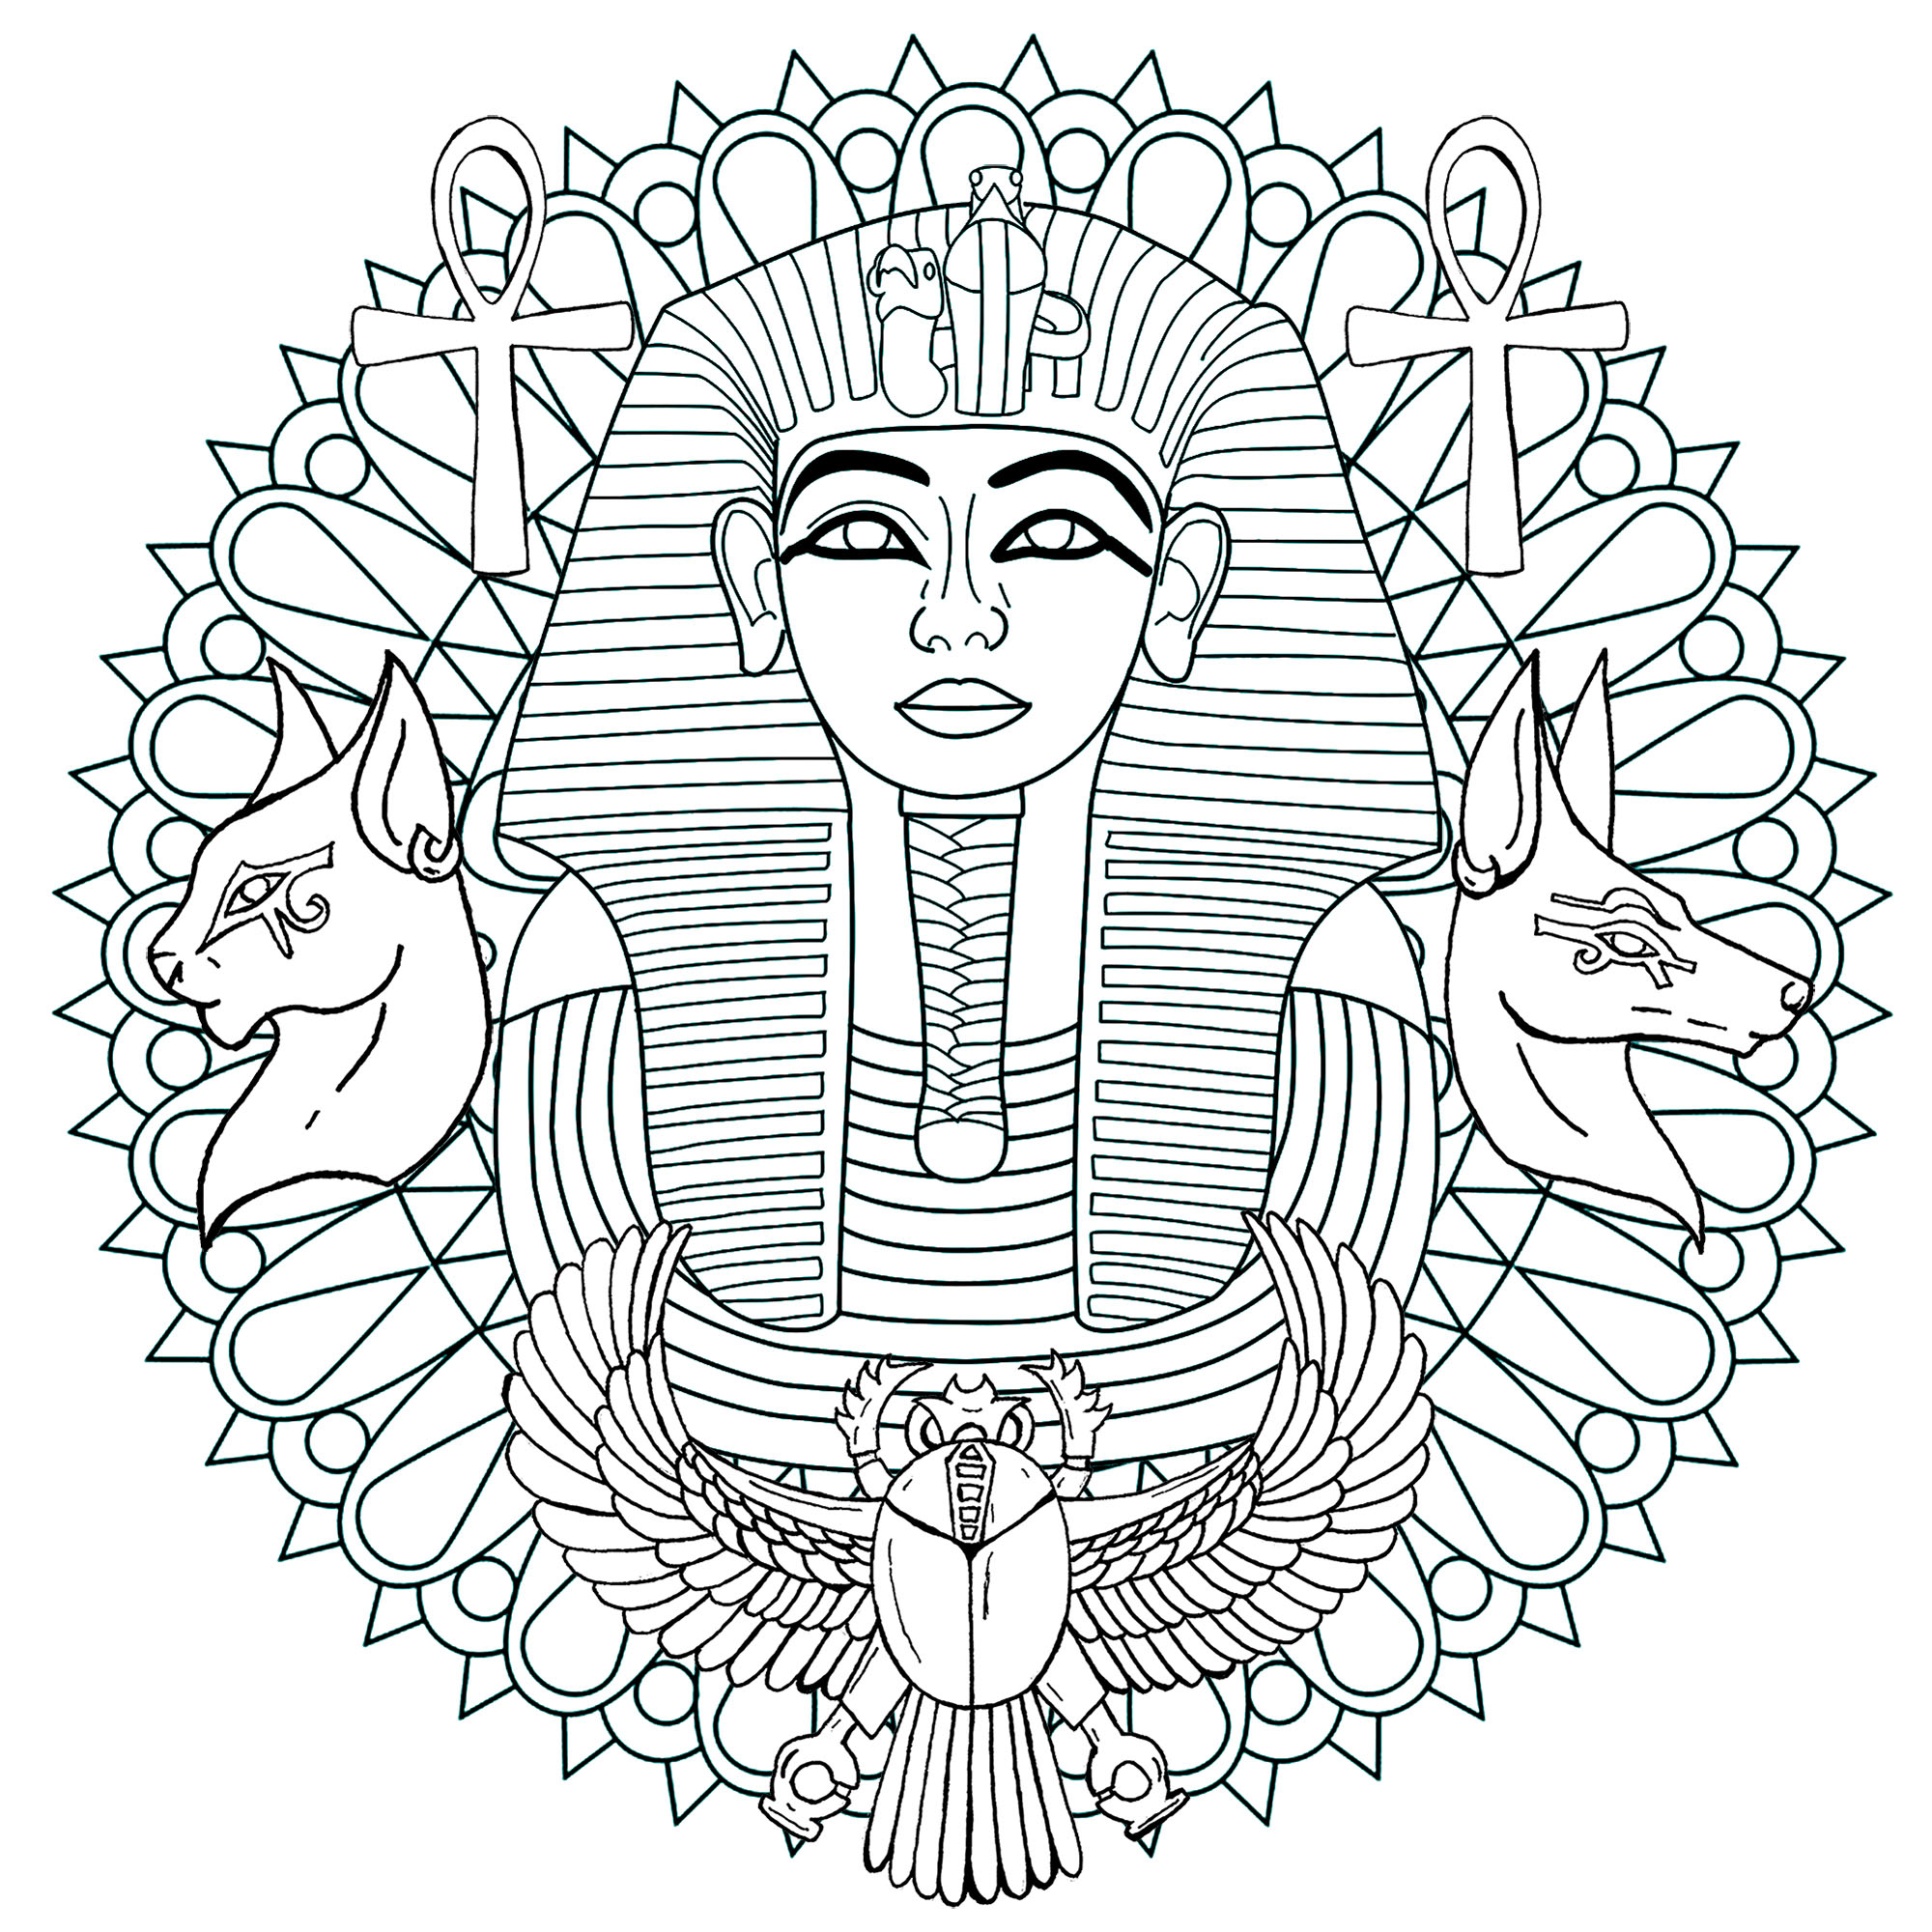 Mandala de Tutankhamon. Faraó da 18ª dinastia, Tutankhamon governou o antigo Egipto no século XIII a.C, Artista : Art'Isabelle